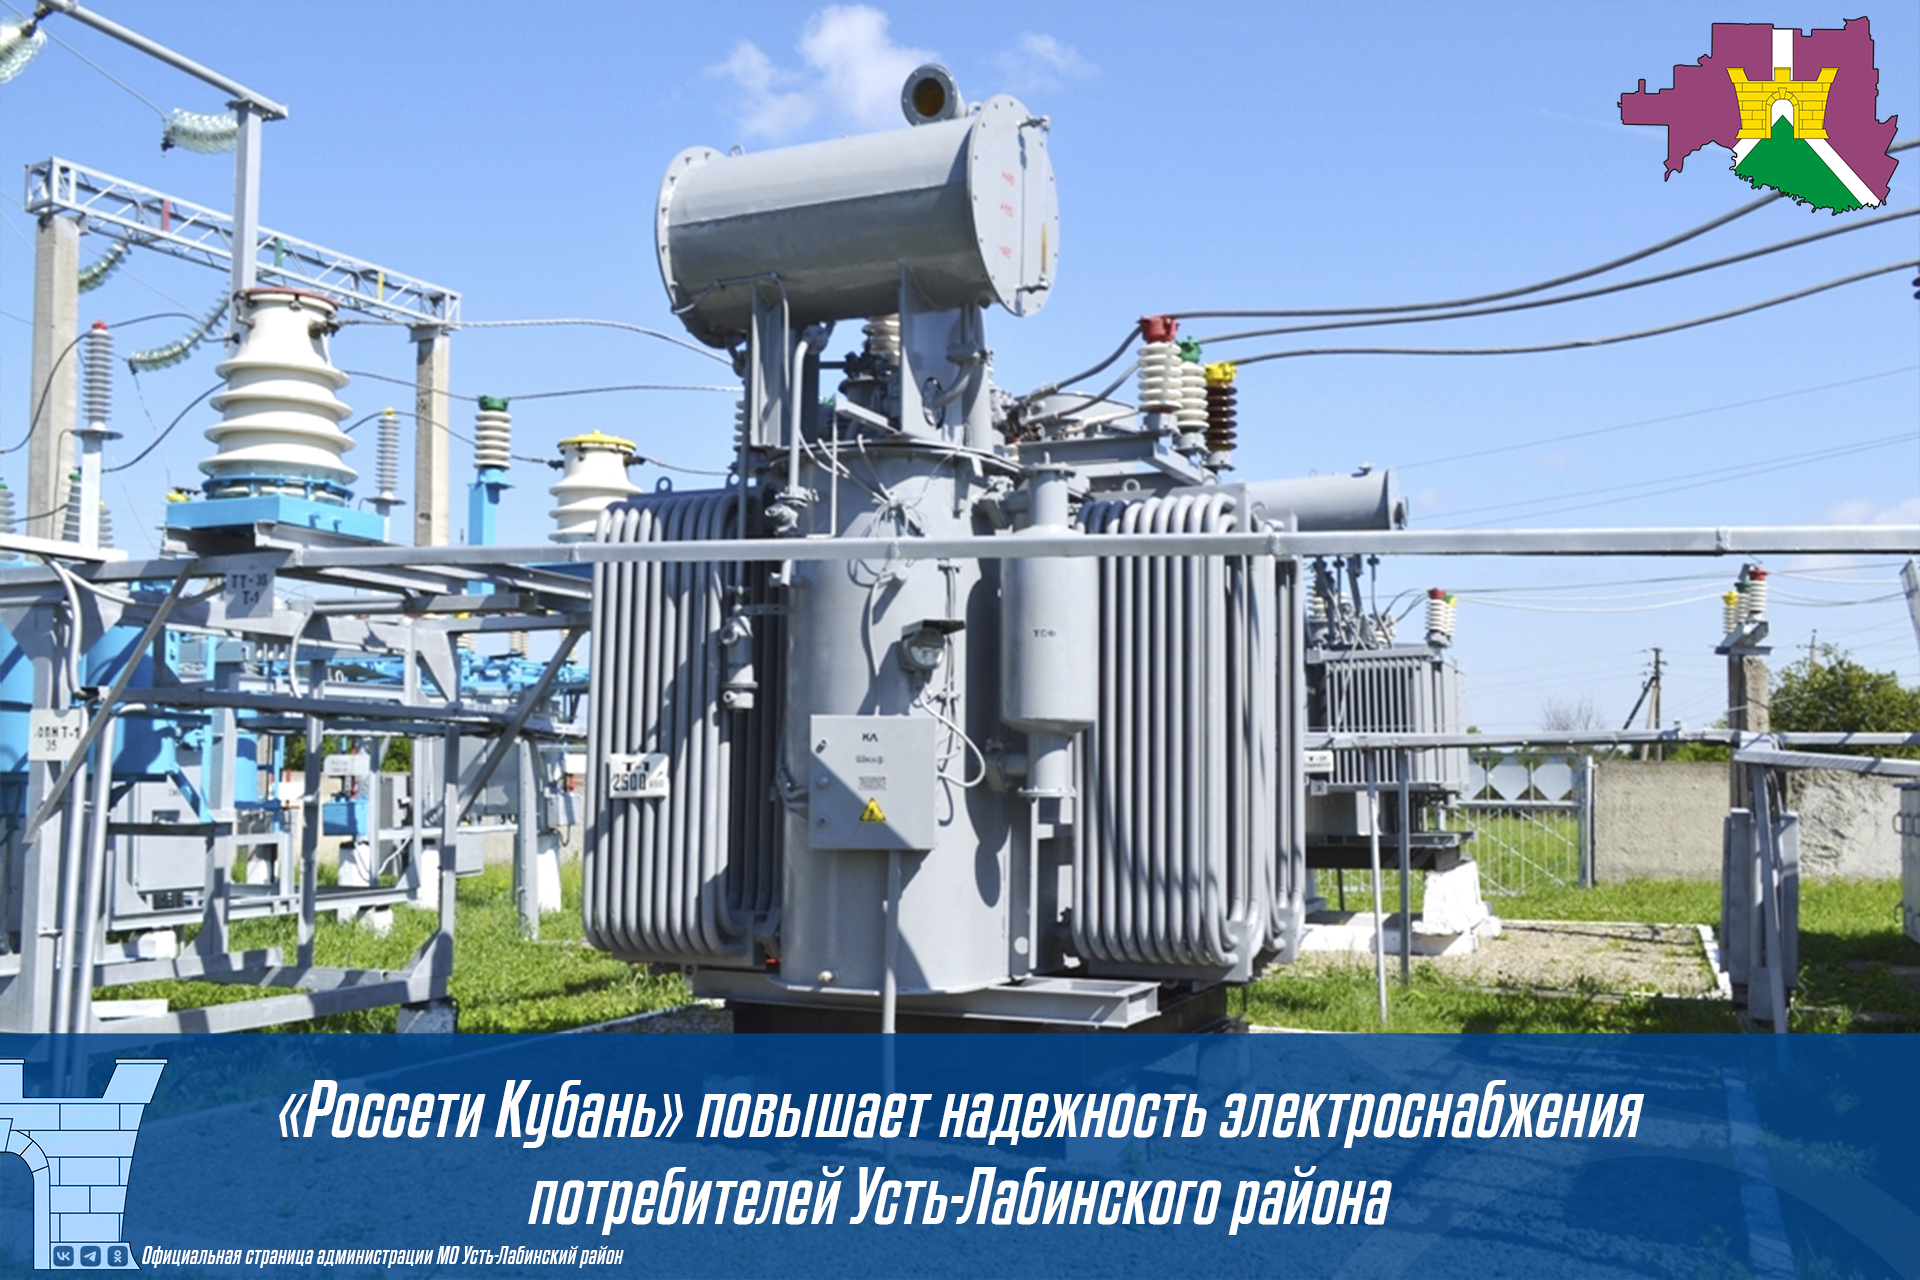 «Россети Кубань» повышает надежность электроснабжения потребителей Усть-Лабинского района